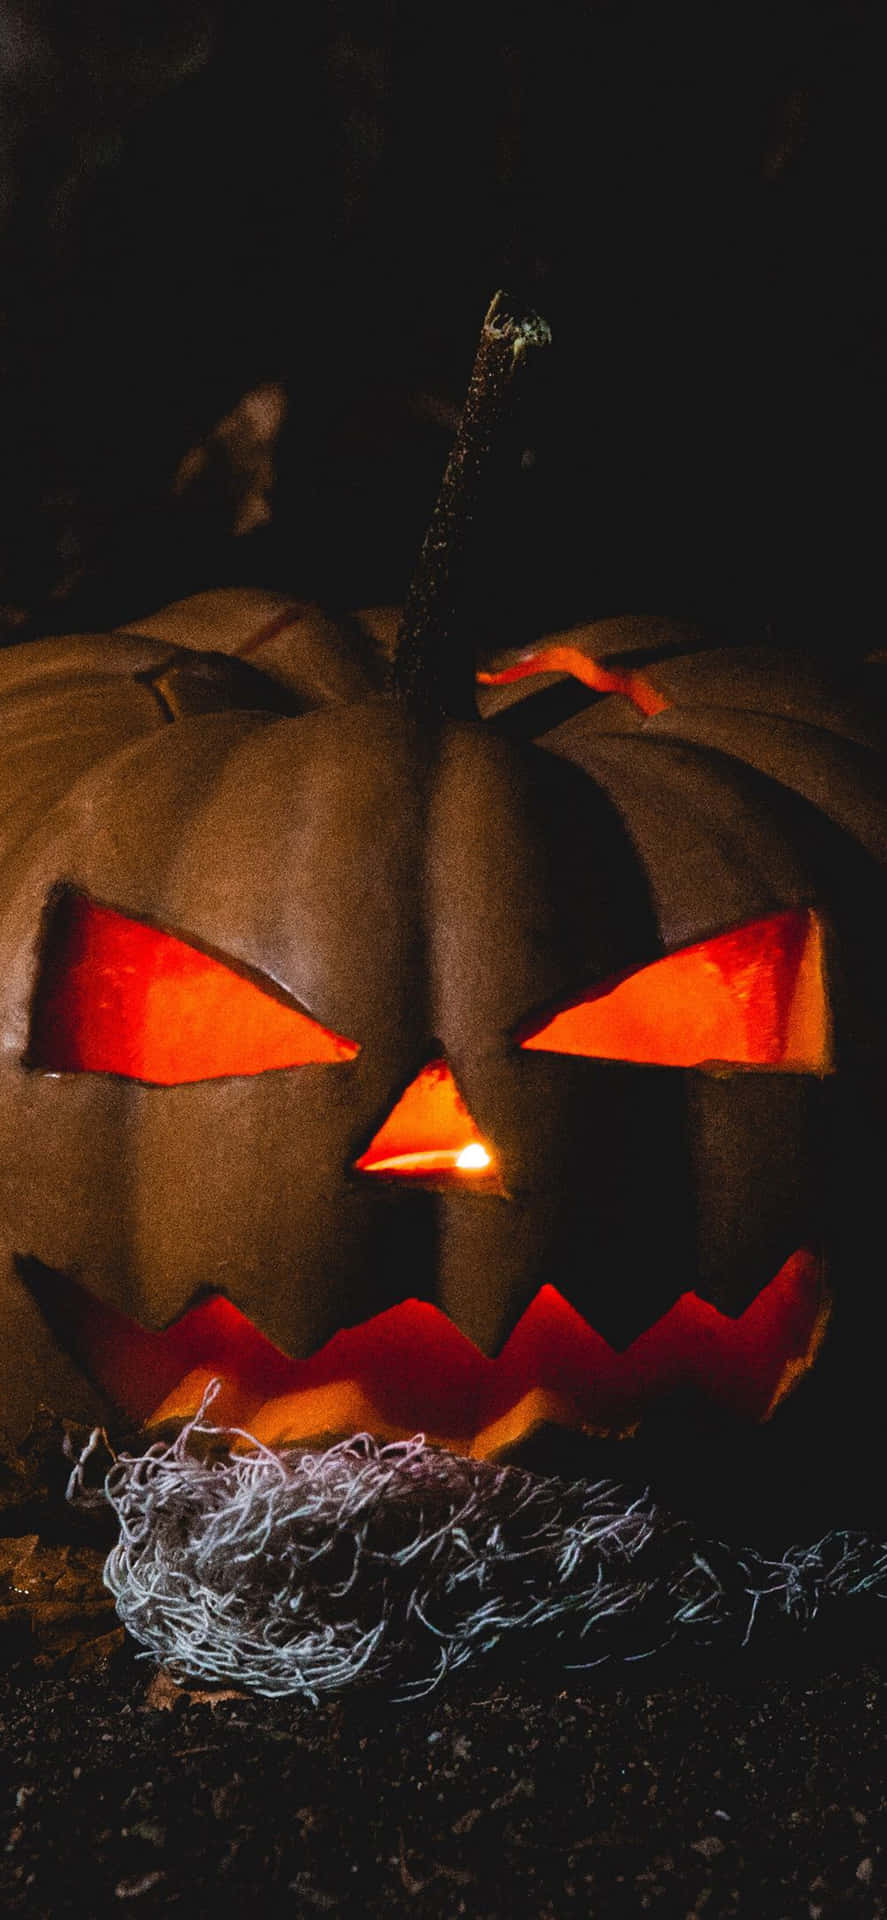 Iphonehintergrund Mit Gruseligem Jack O'lantern Zu Halloween